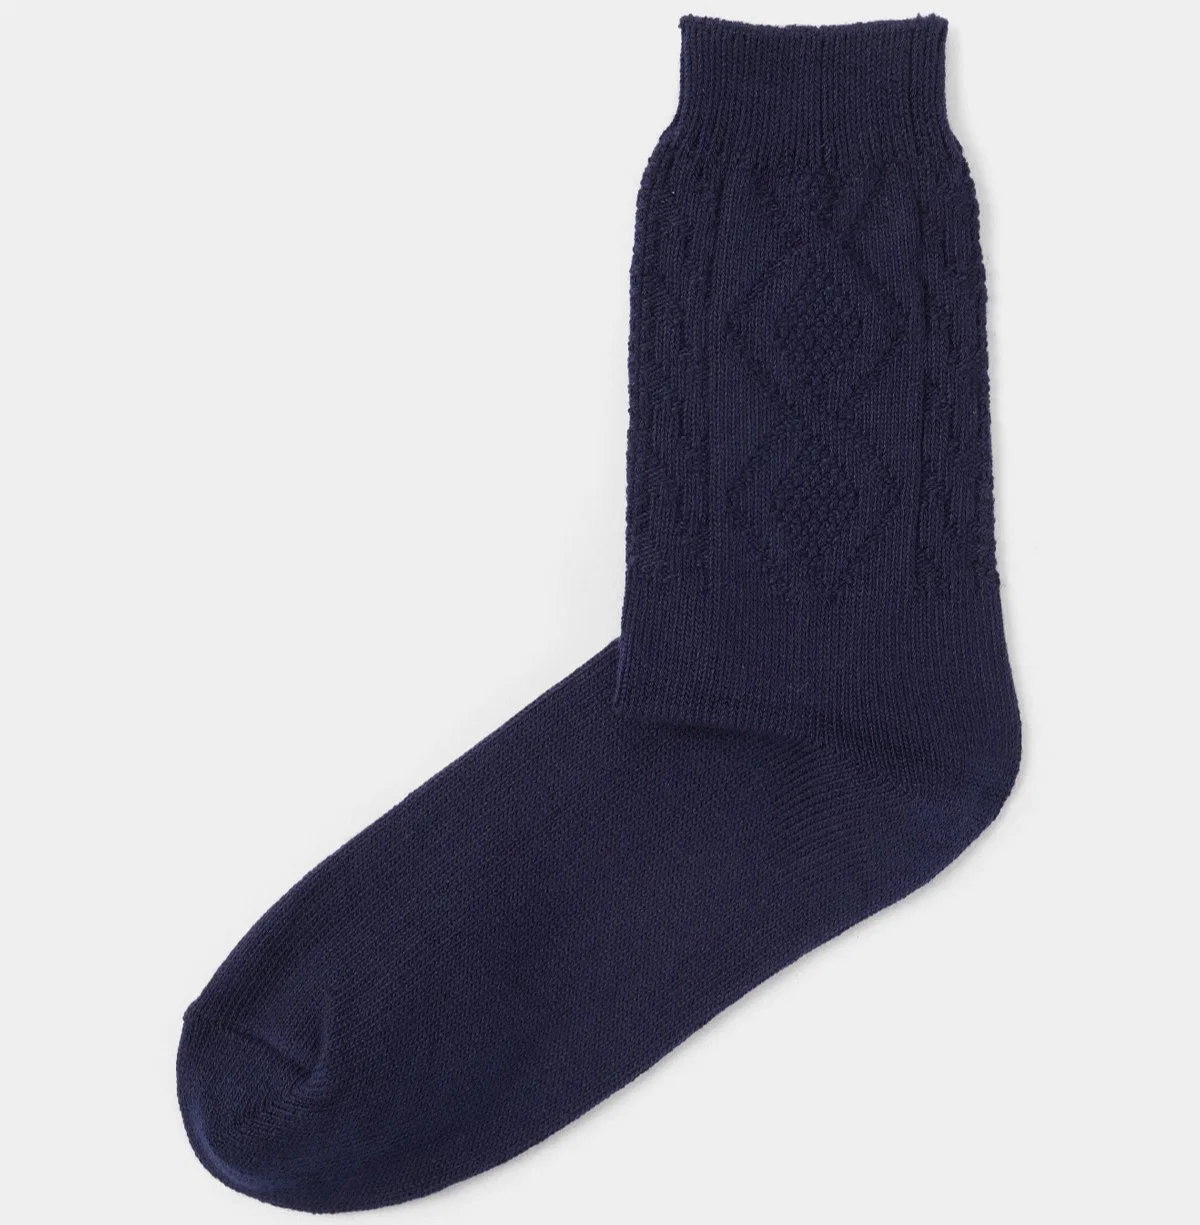 Baumwolle Kaschmir Rippgestrickte Ladies Fashion Socken Bekleidung Accessoires